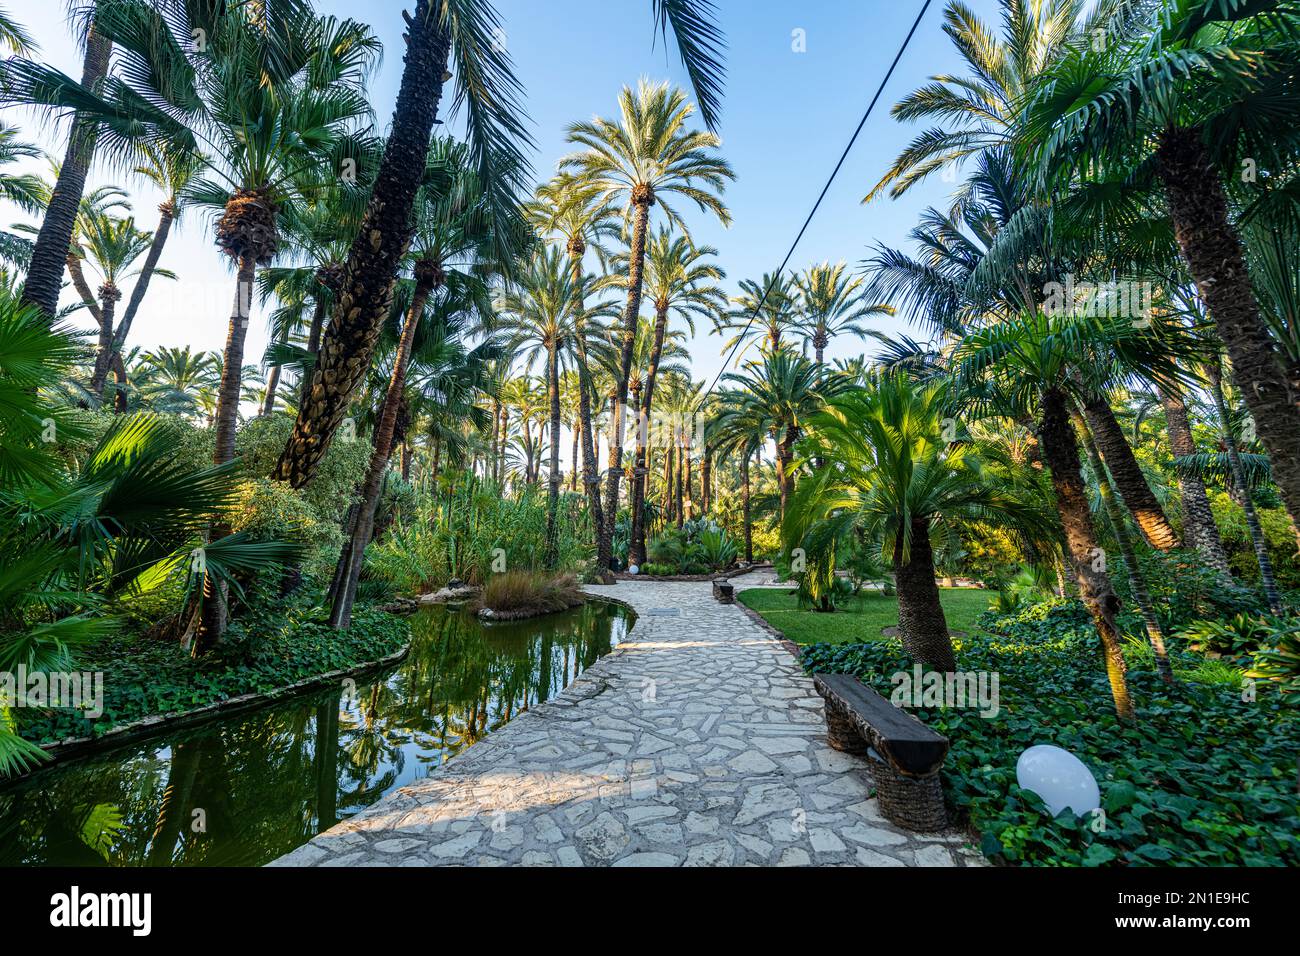 Palmiers, Palmeral (palmeraie) d'Elche, site classé au patrimoine mondial de l'UNESCO, Alicante, Valence, Espagne, Europe Banque D'Images